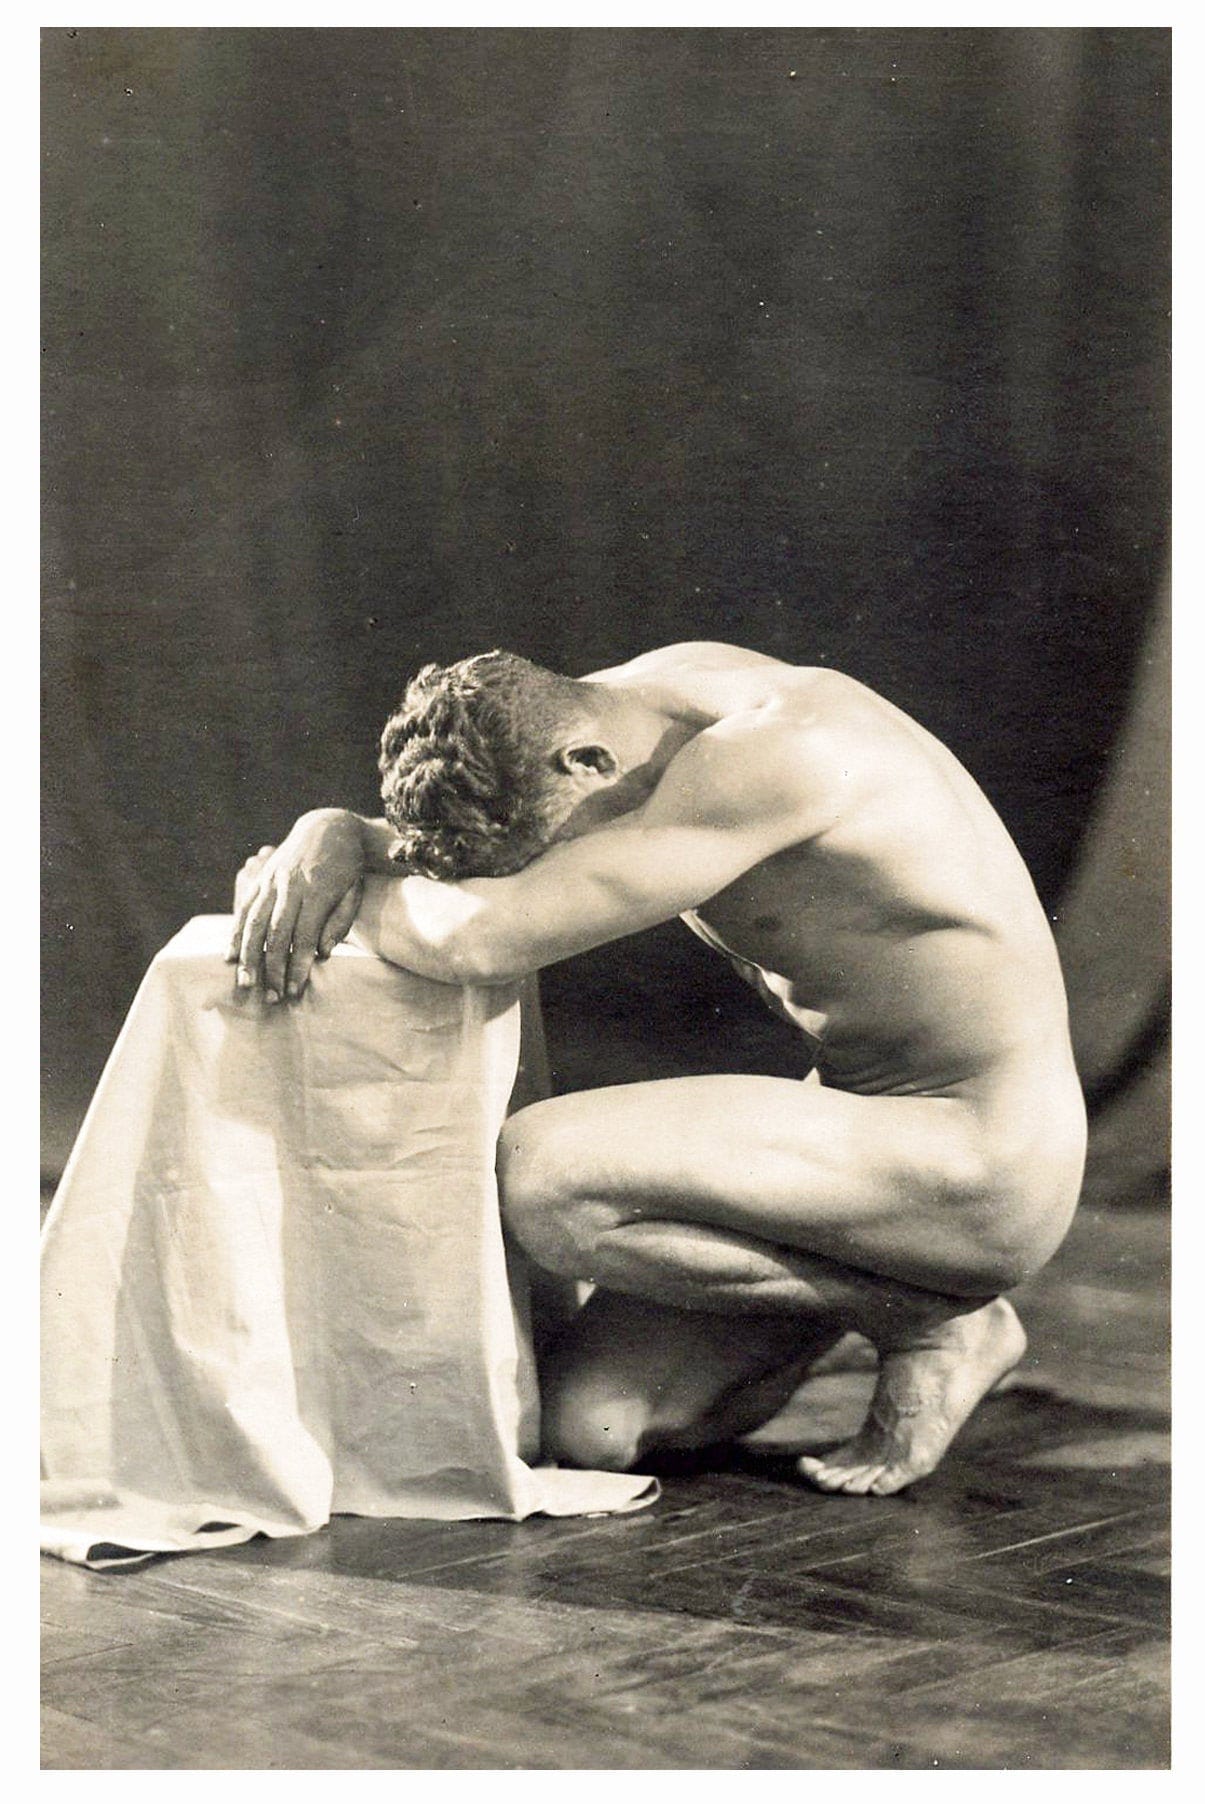 Vintage 1930s Photo Reprint Nude Amateur Man Poses image pic photo